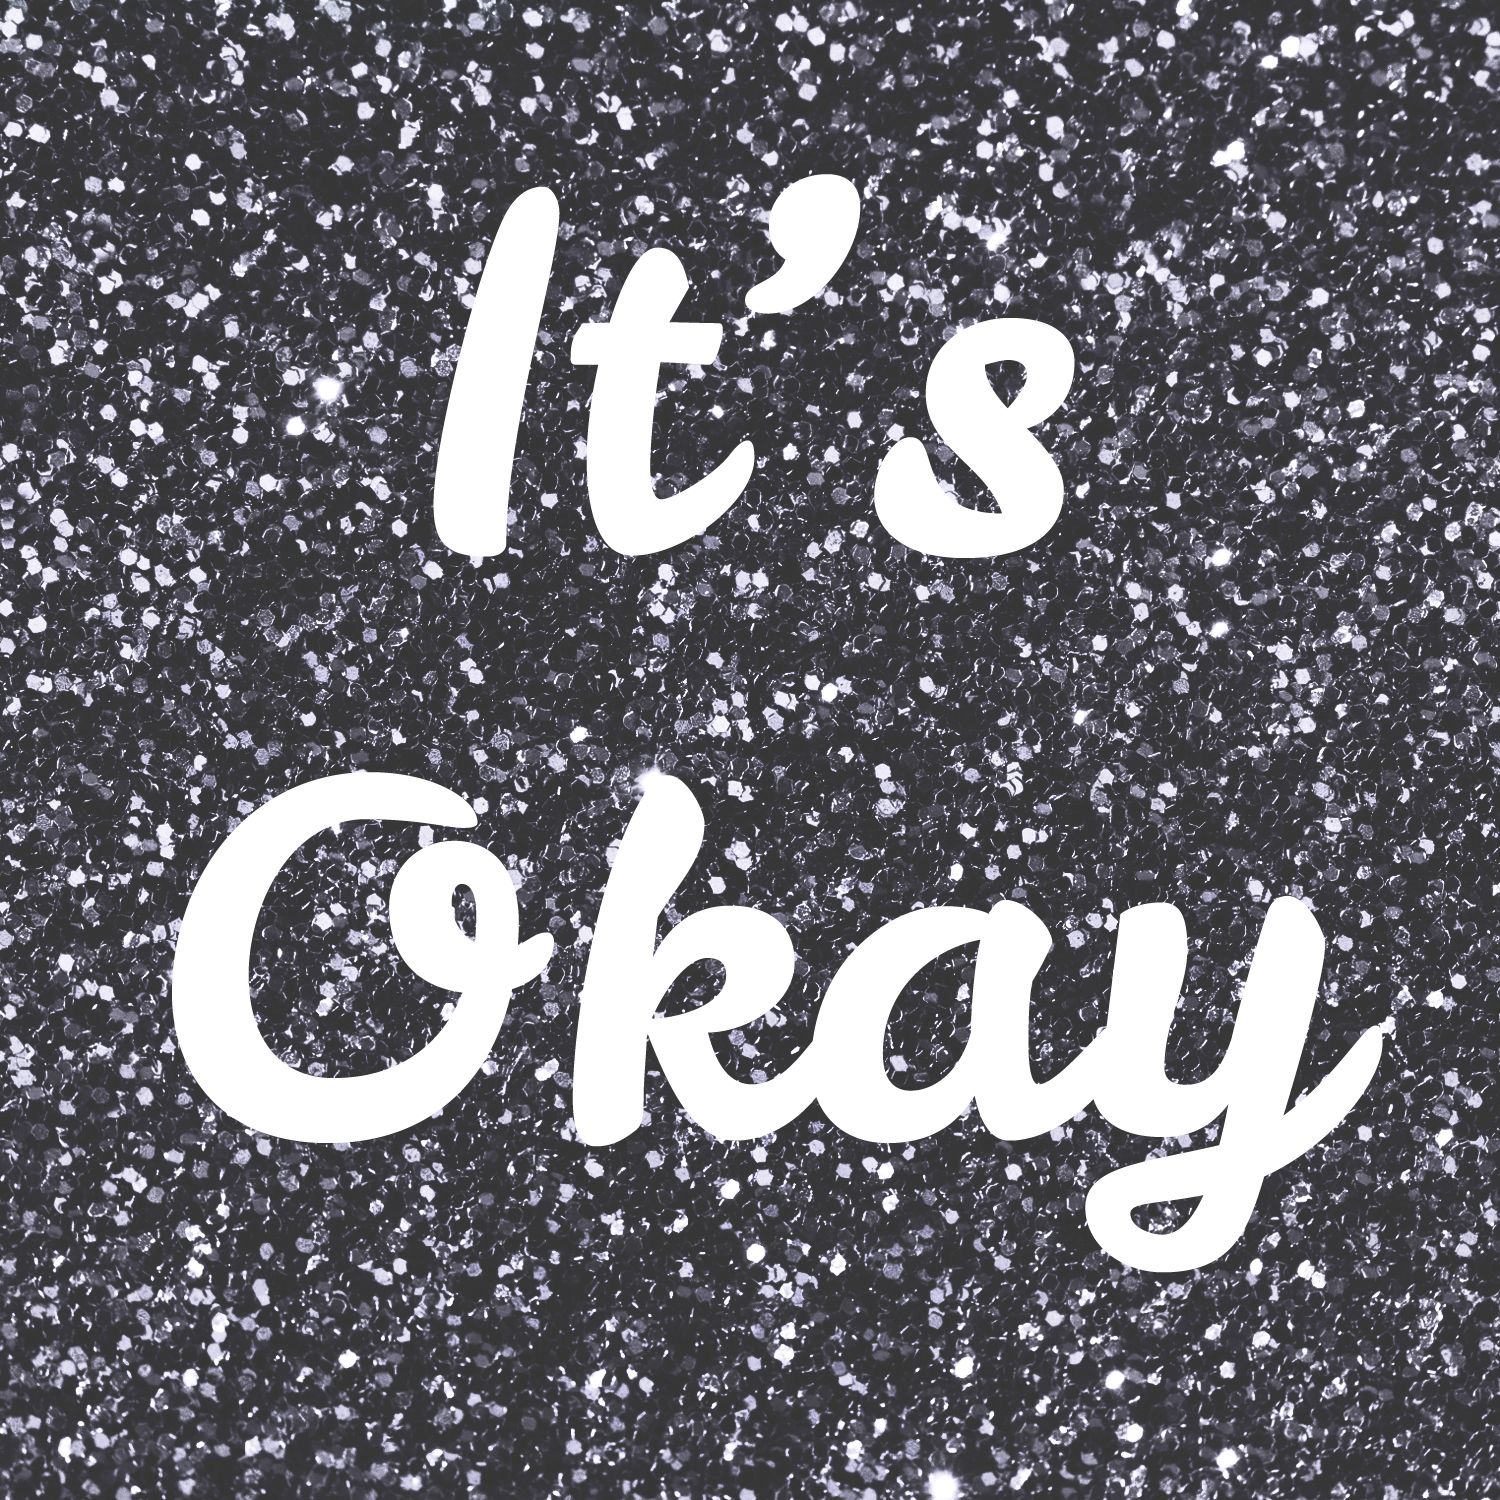 it's okay